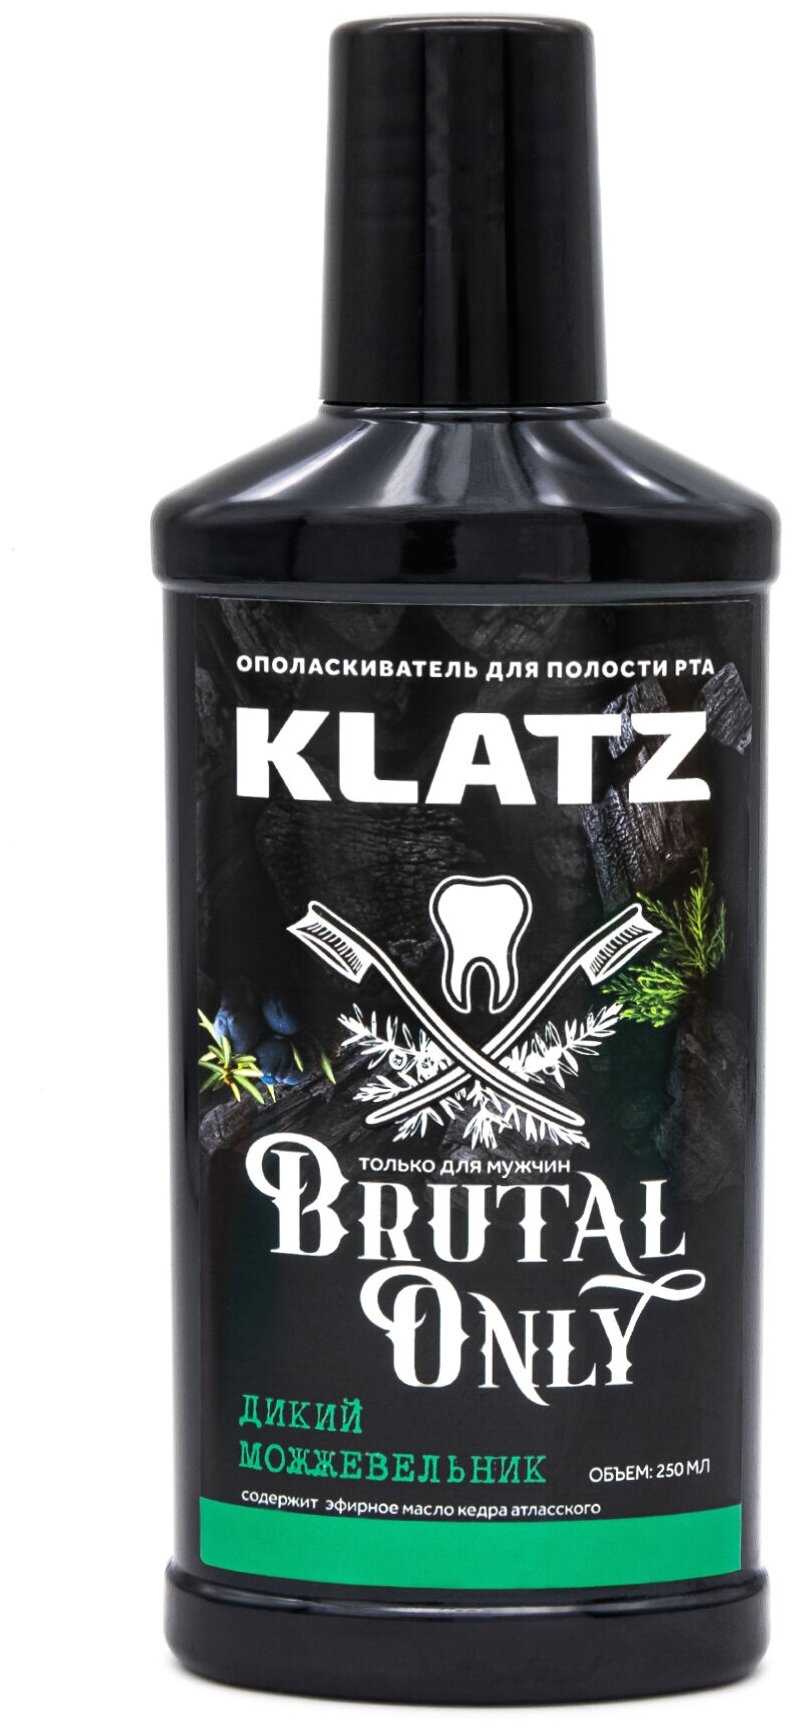 KLATZ / Brutal Only / Ополаскиватель для полости рта Дикий можжевельник 250 мл